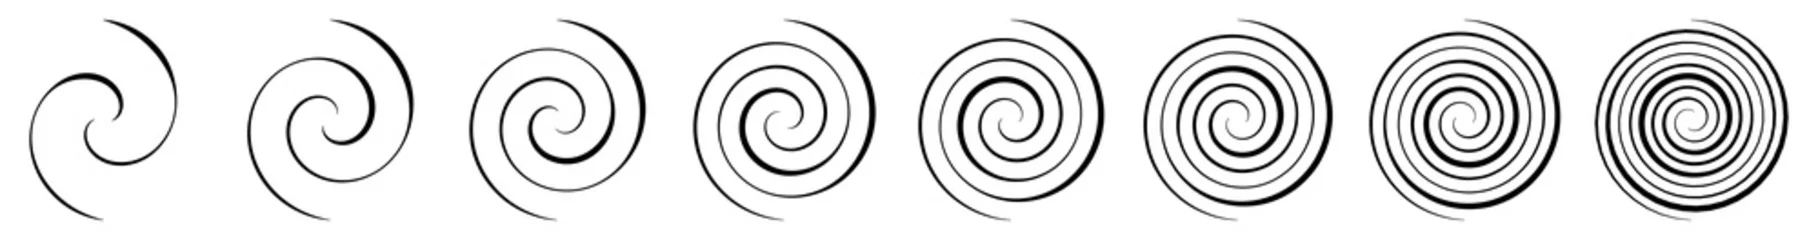 Foto op Canvas Spiral, swirl, twirl and whirl element. Helix, volute ripple, vortex shape © Pixxsa